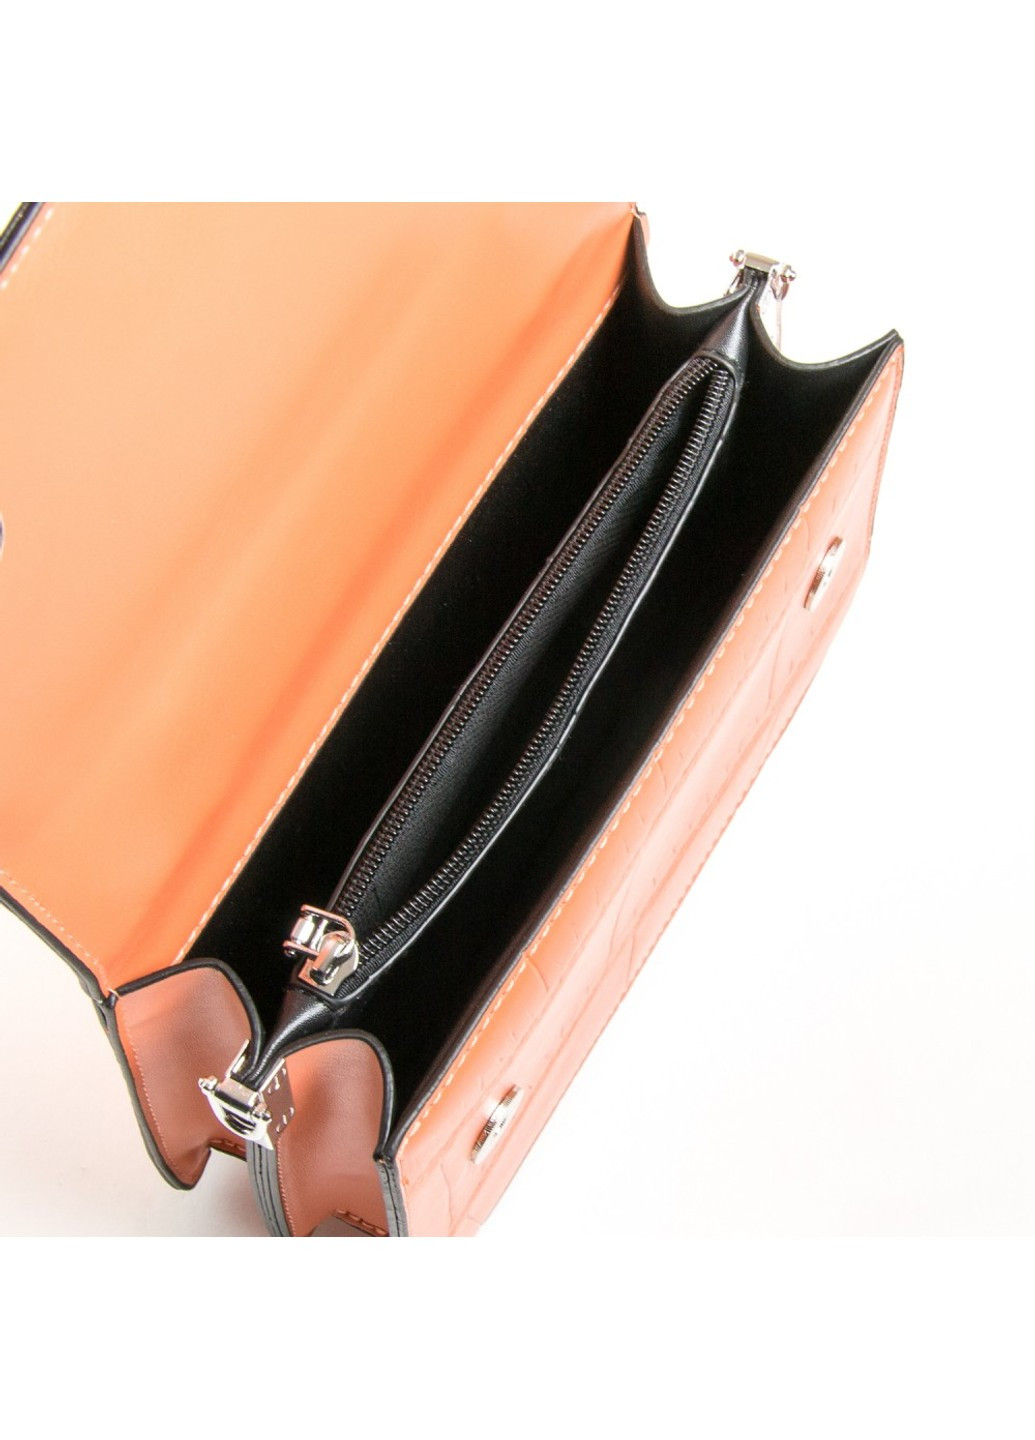 Женская сумочка из кожезаменителя 04-02 8662 orange Fashion (261486706)